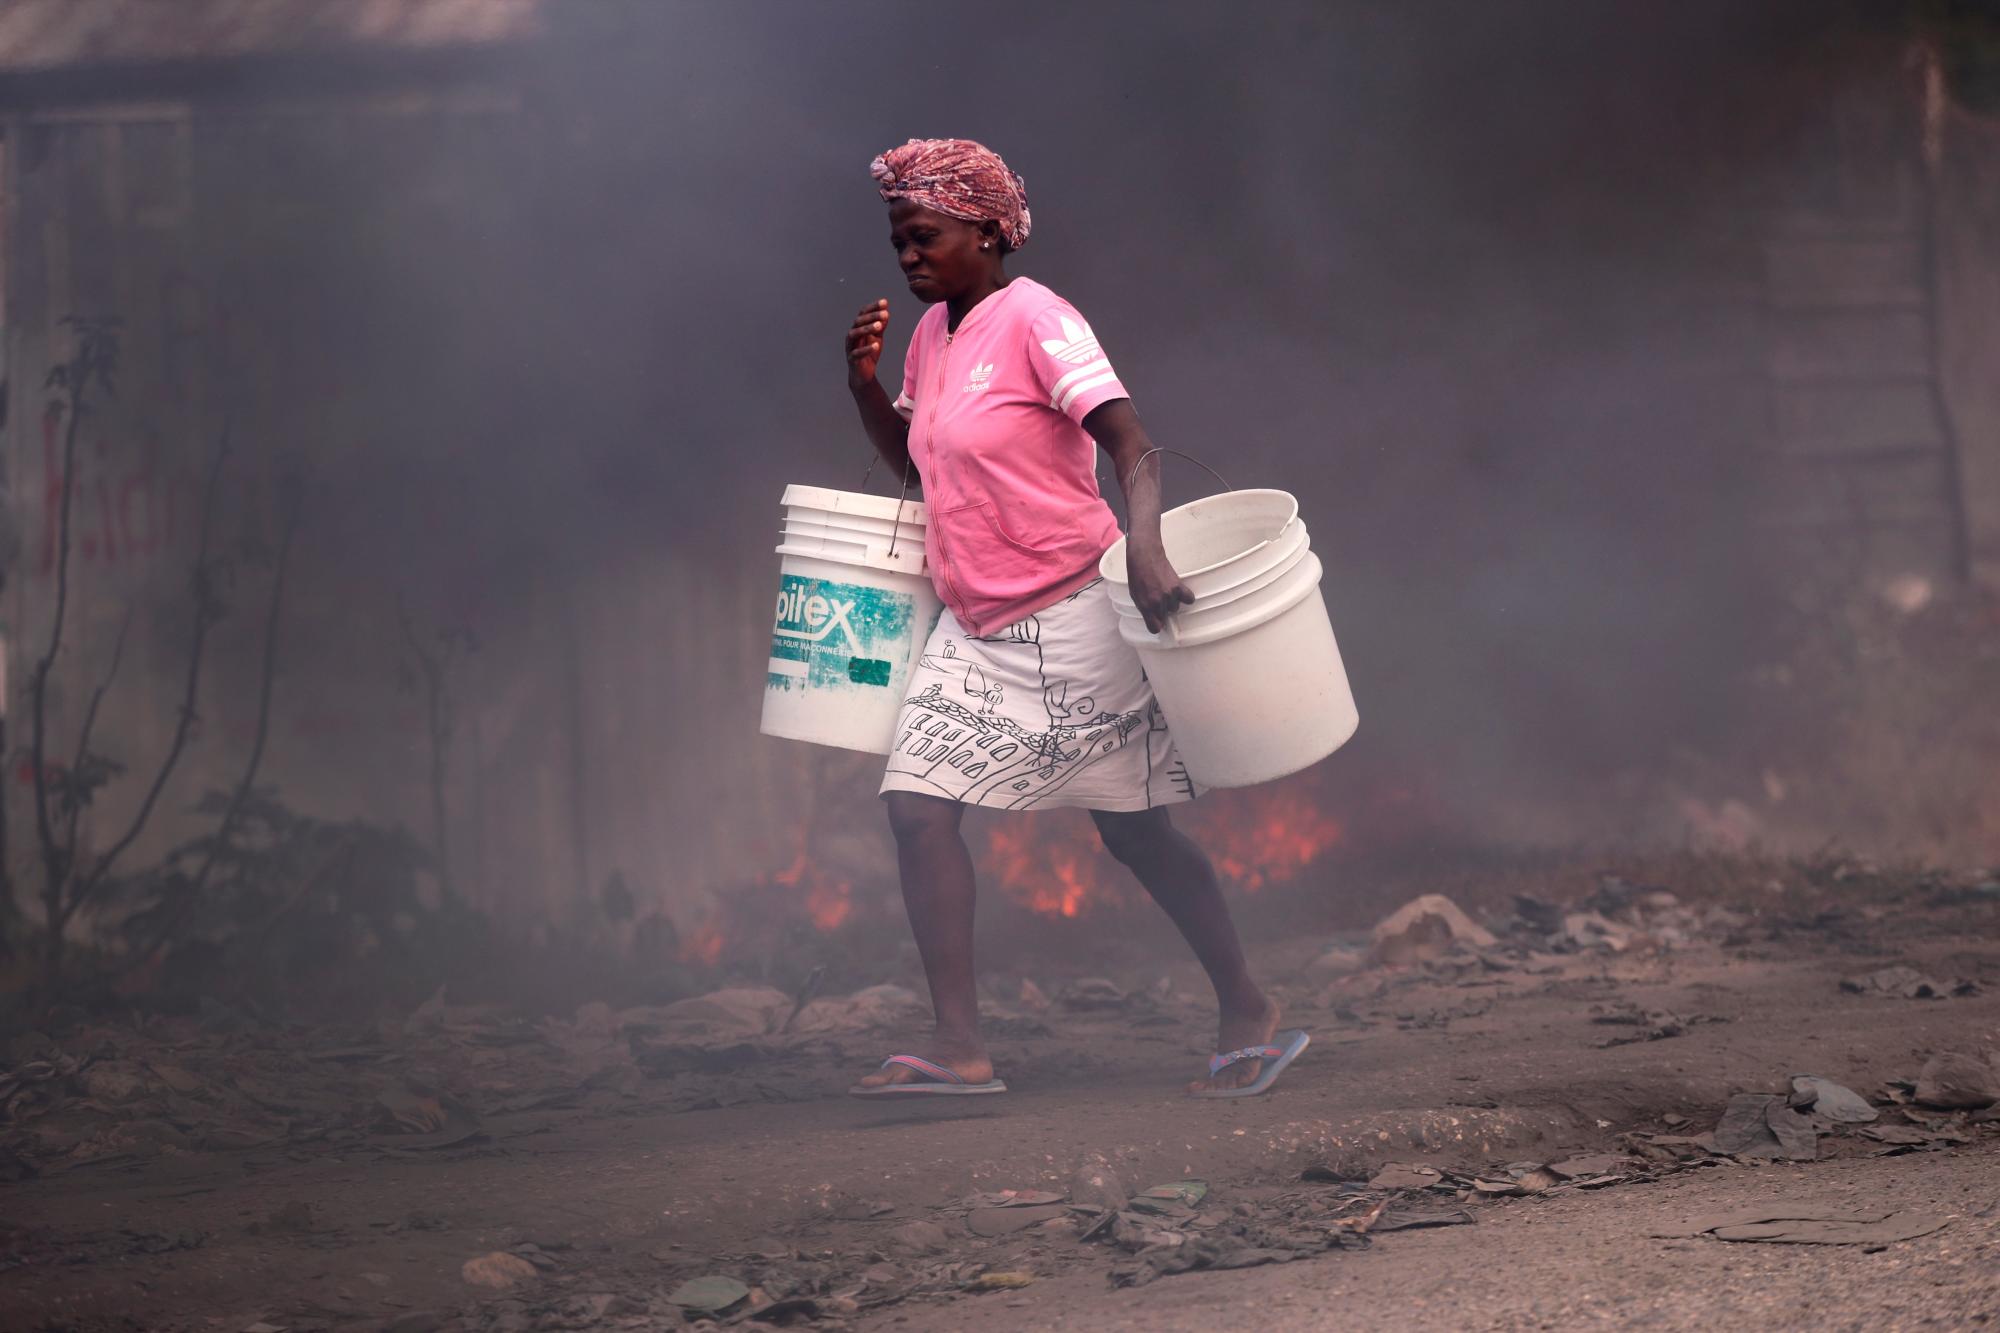 PUERTO PRÍNCIPE (HAITÍ), 11/02/2021.- Una mujer camina hoy junto a unas barricadas en llamas, durante una protesta contra el Gobierno en Puerto Príncipe (Haití). Haití sufre por estos días una nueva crisis política tras la jubilación forzosa de tres jueces opositores ordenada el lunes por el Gobierno de Jovenel Moise, en aparente violación de la Constitución. EFE/ Orlando Barría